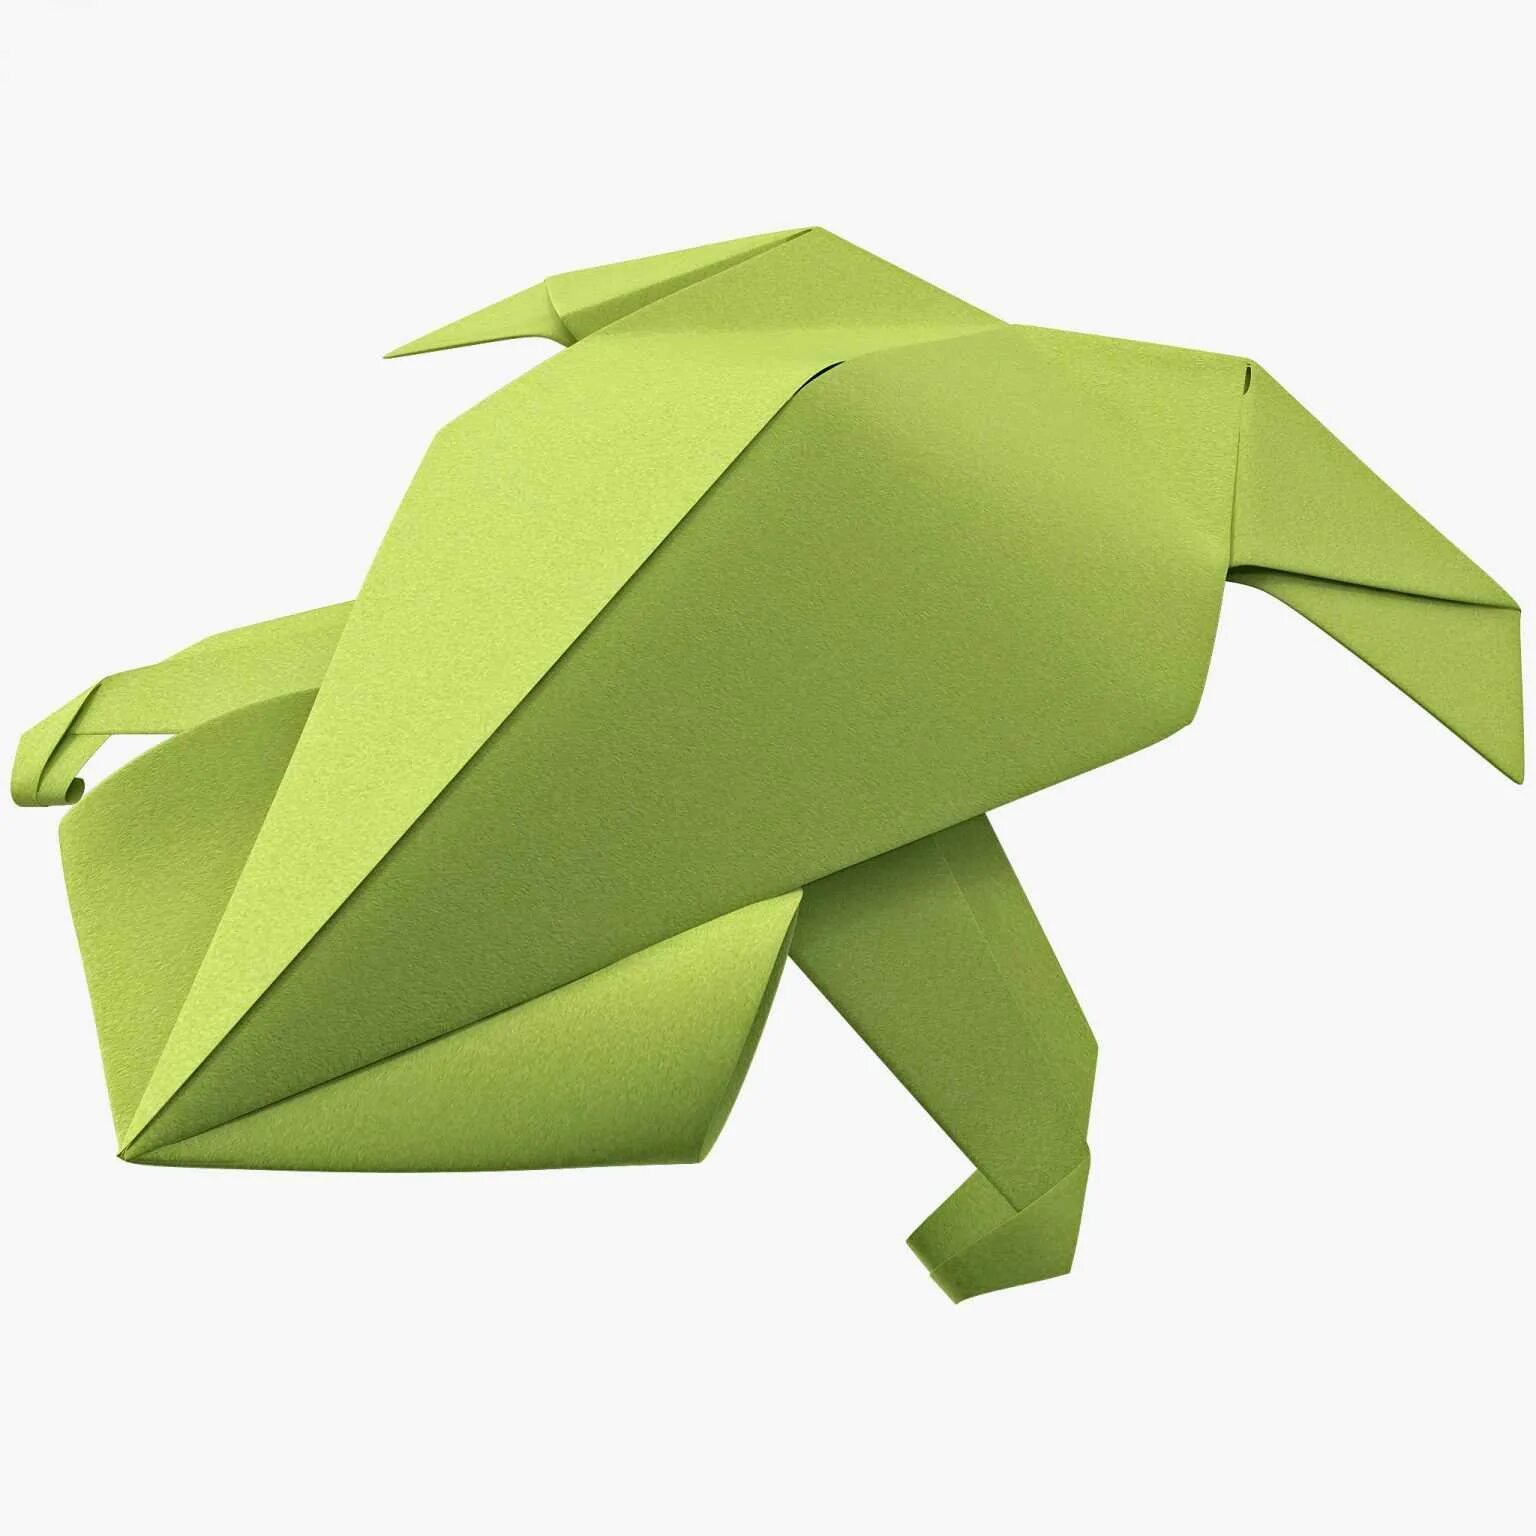 Оригами модели. Оригами лягушка. Объемная лягушка из бумаги. Оригами жаба. Оригами квакушка.